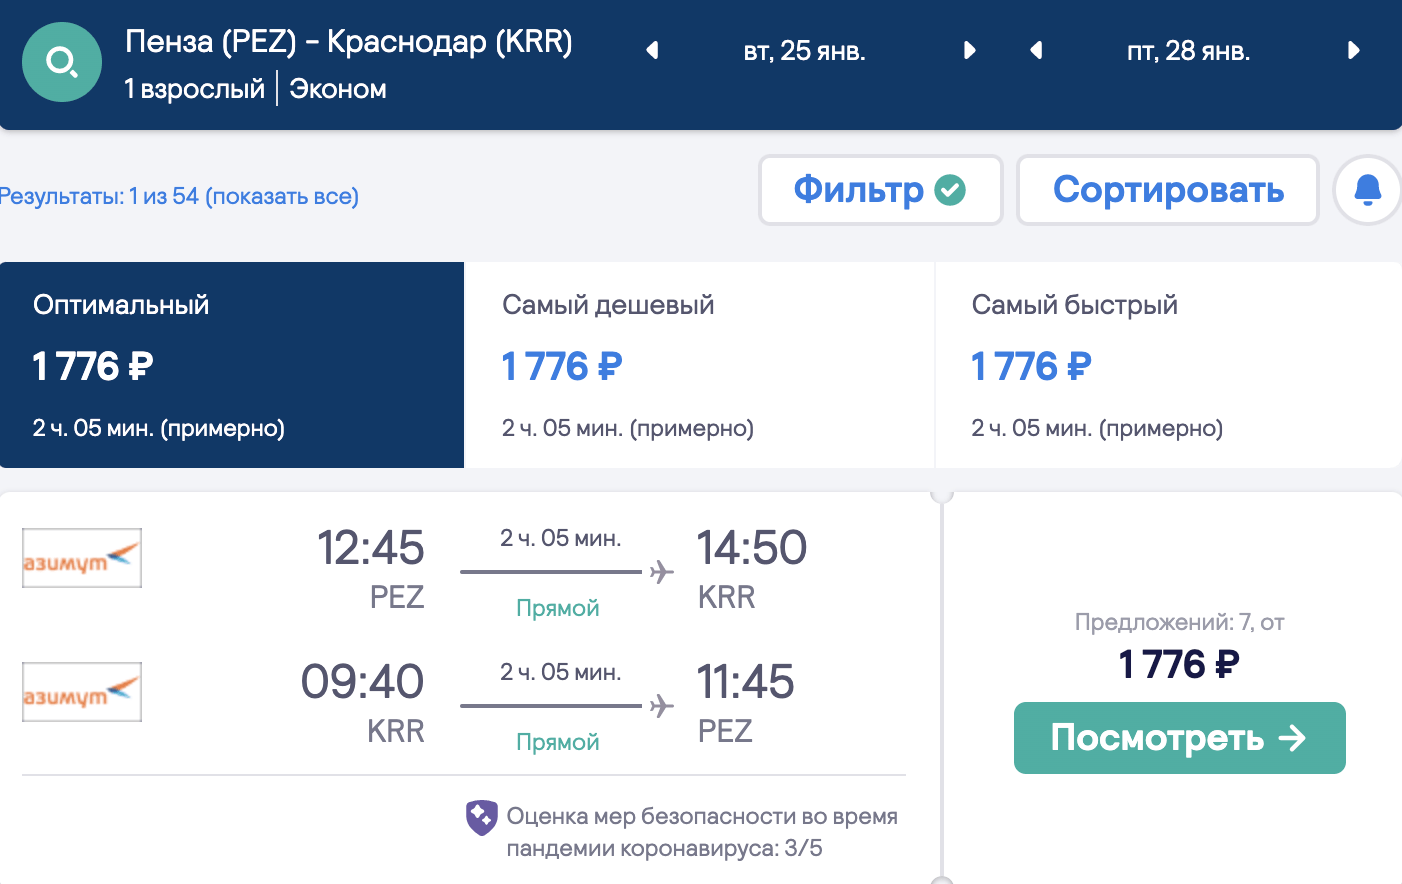 Дешевые билеты Азимута из Пензы и Саранска в Краснодар всего за 1800₽ туда-обратно в январе